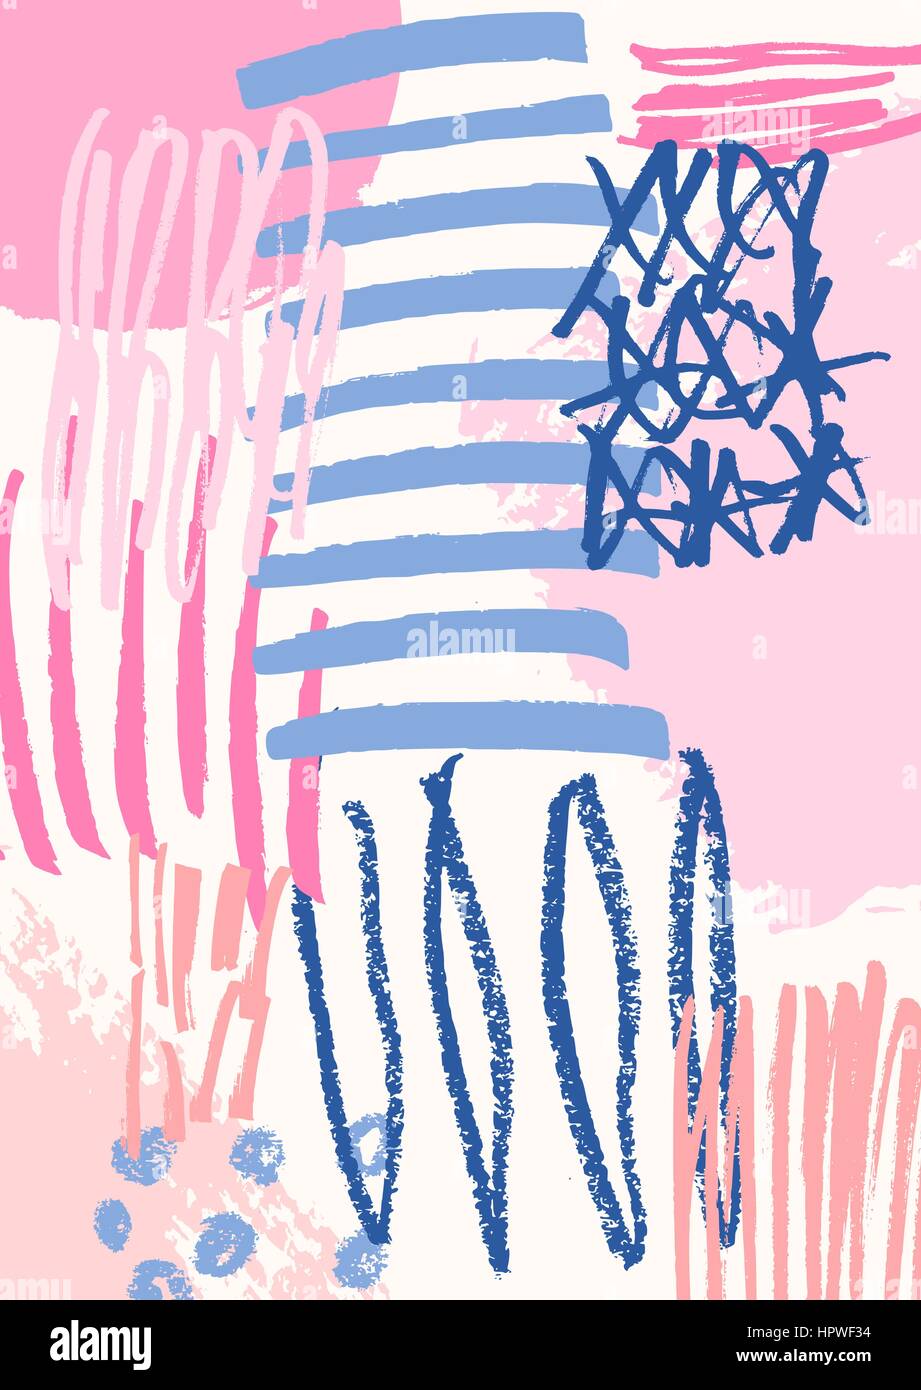 Disegnata a mano composizione astratta in blu e crema e pastello rosa. Tessile moderno, biglietto di auguri, poster, la carta di avvolgimento disegni. Illustrazione Vettoriale